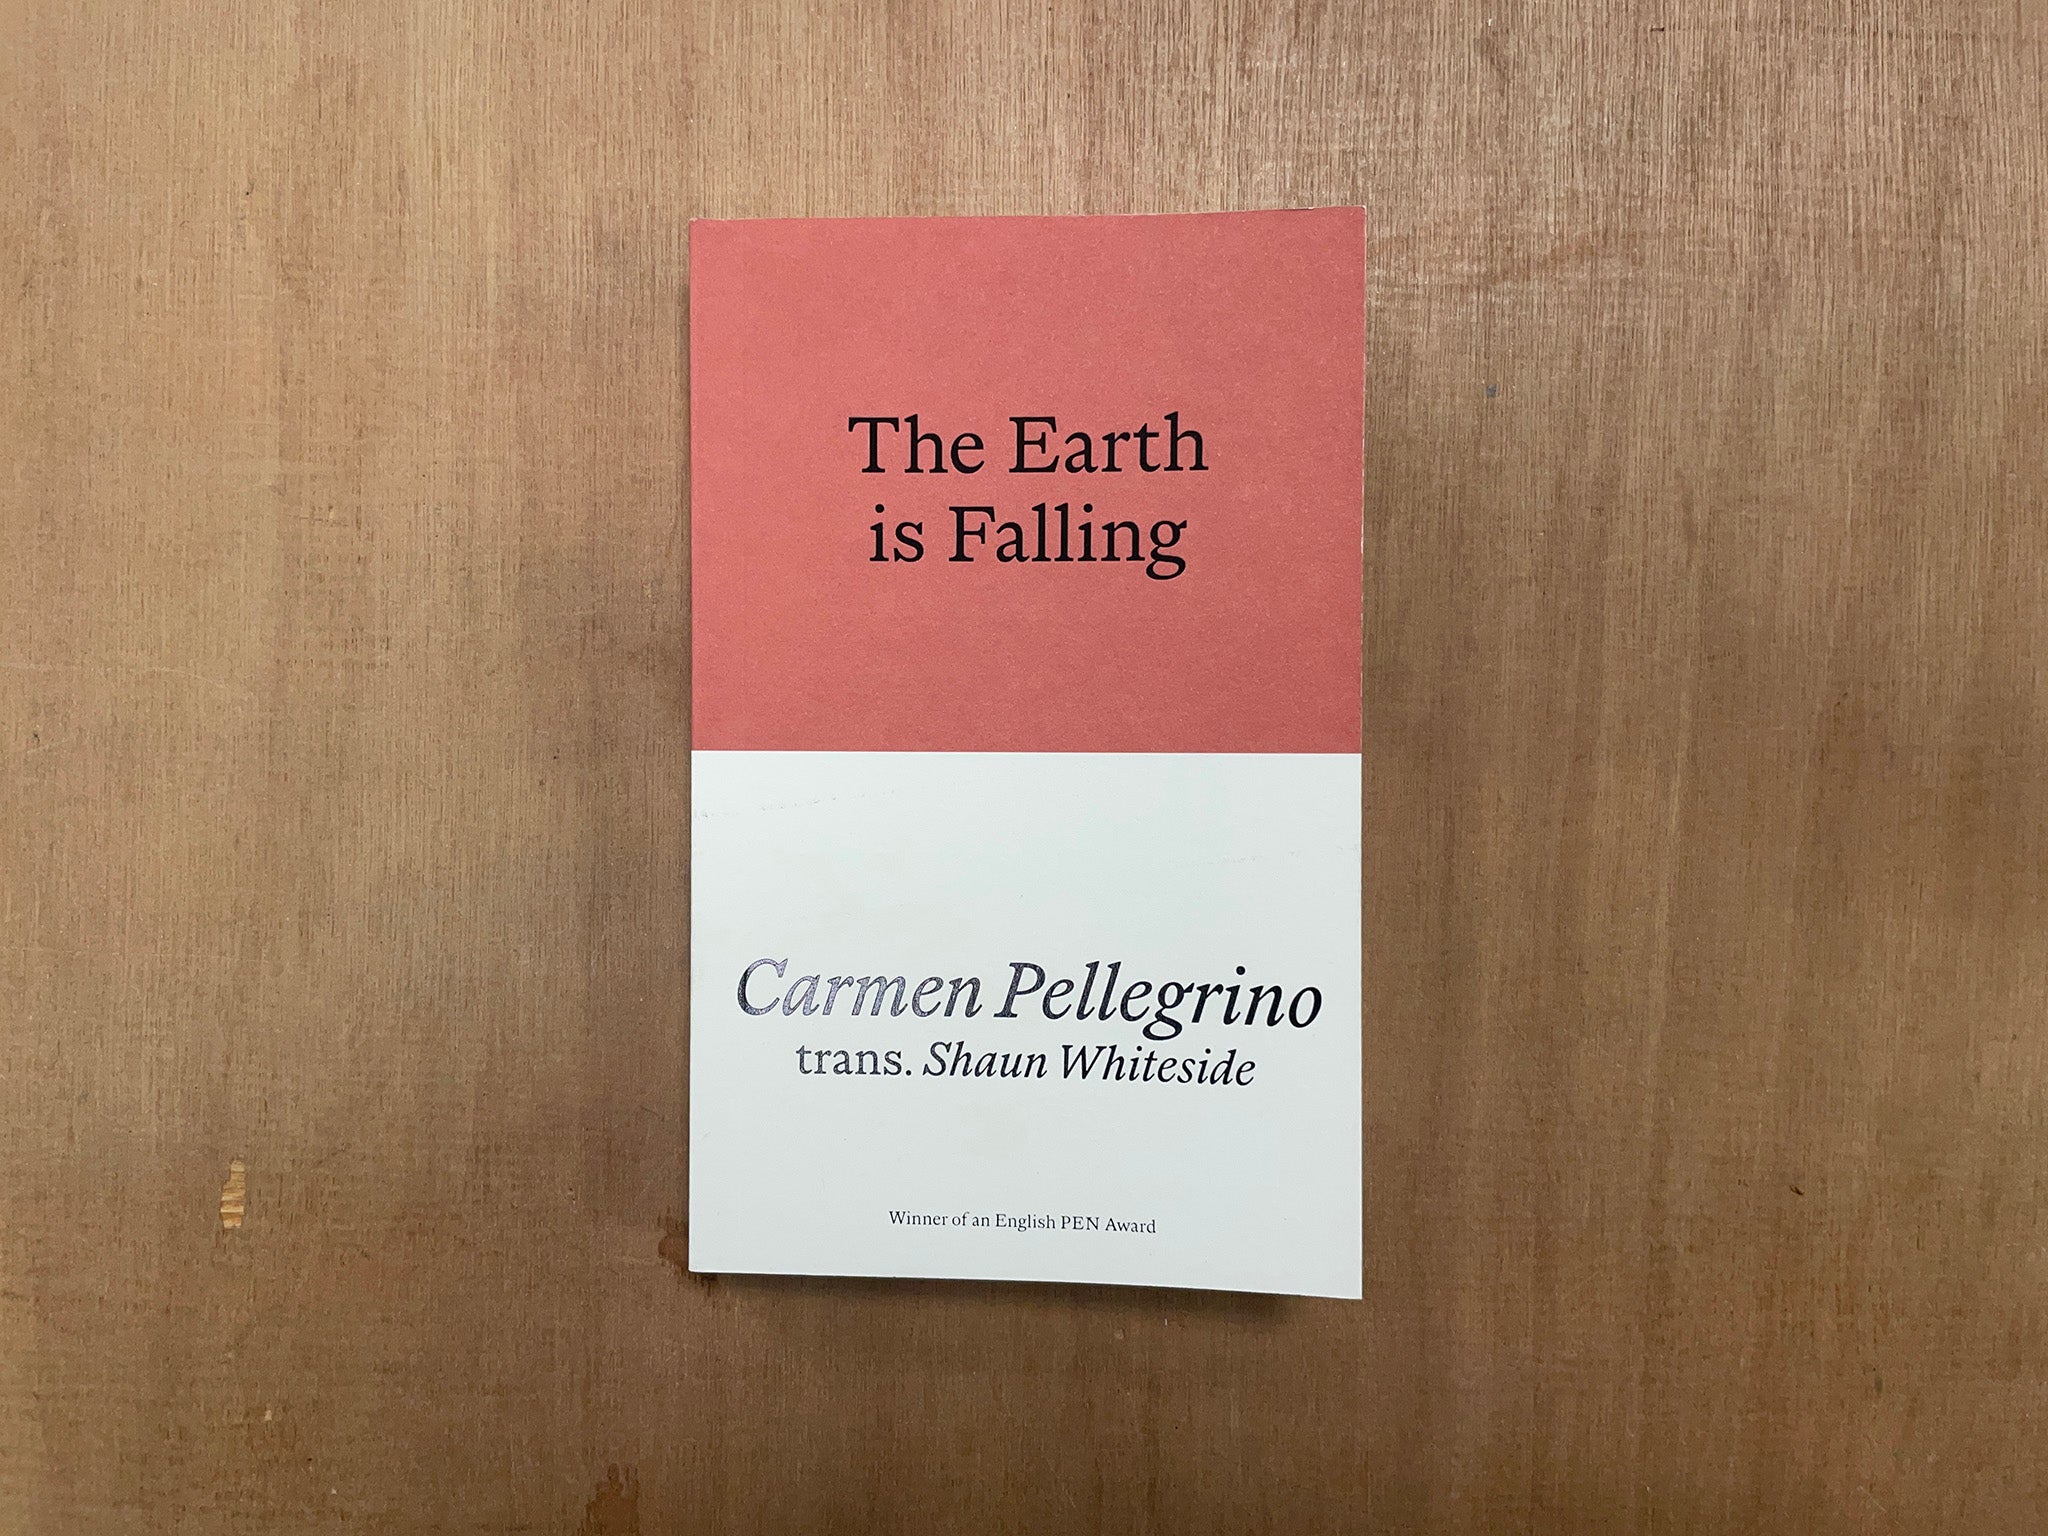 THE EARTH IS FALLING by Carmen Pellegrino